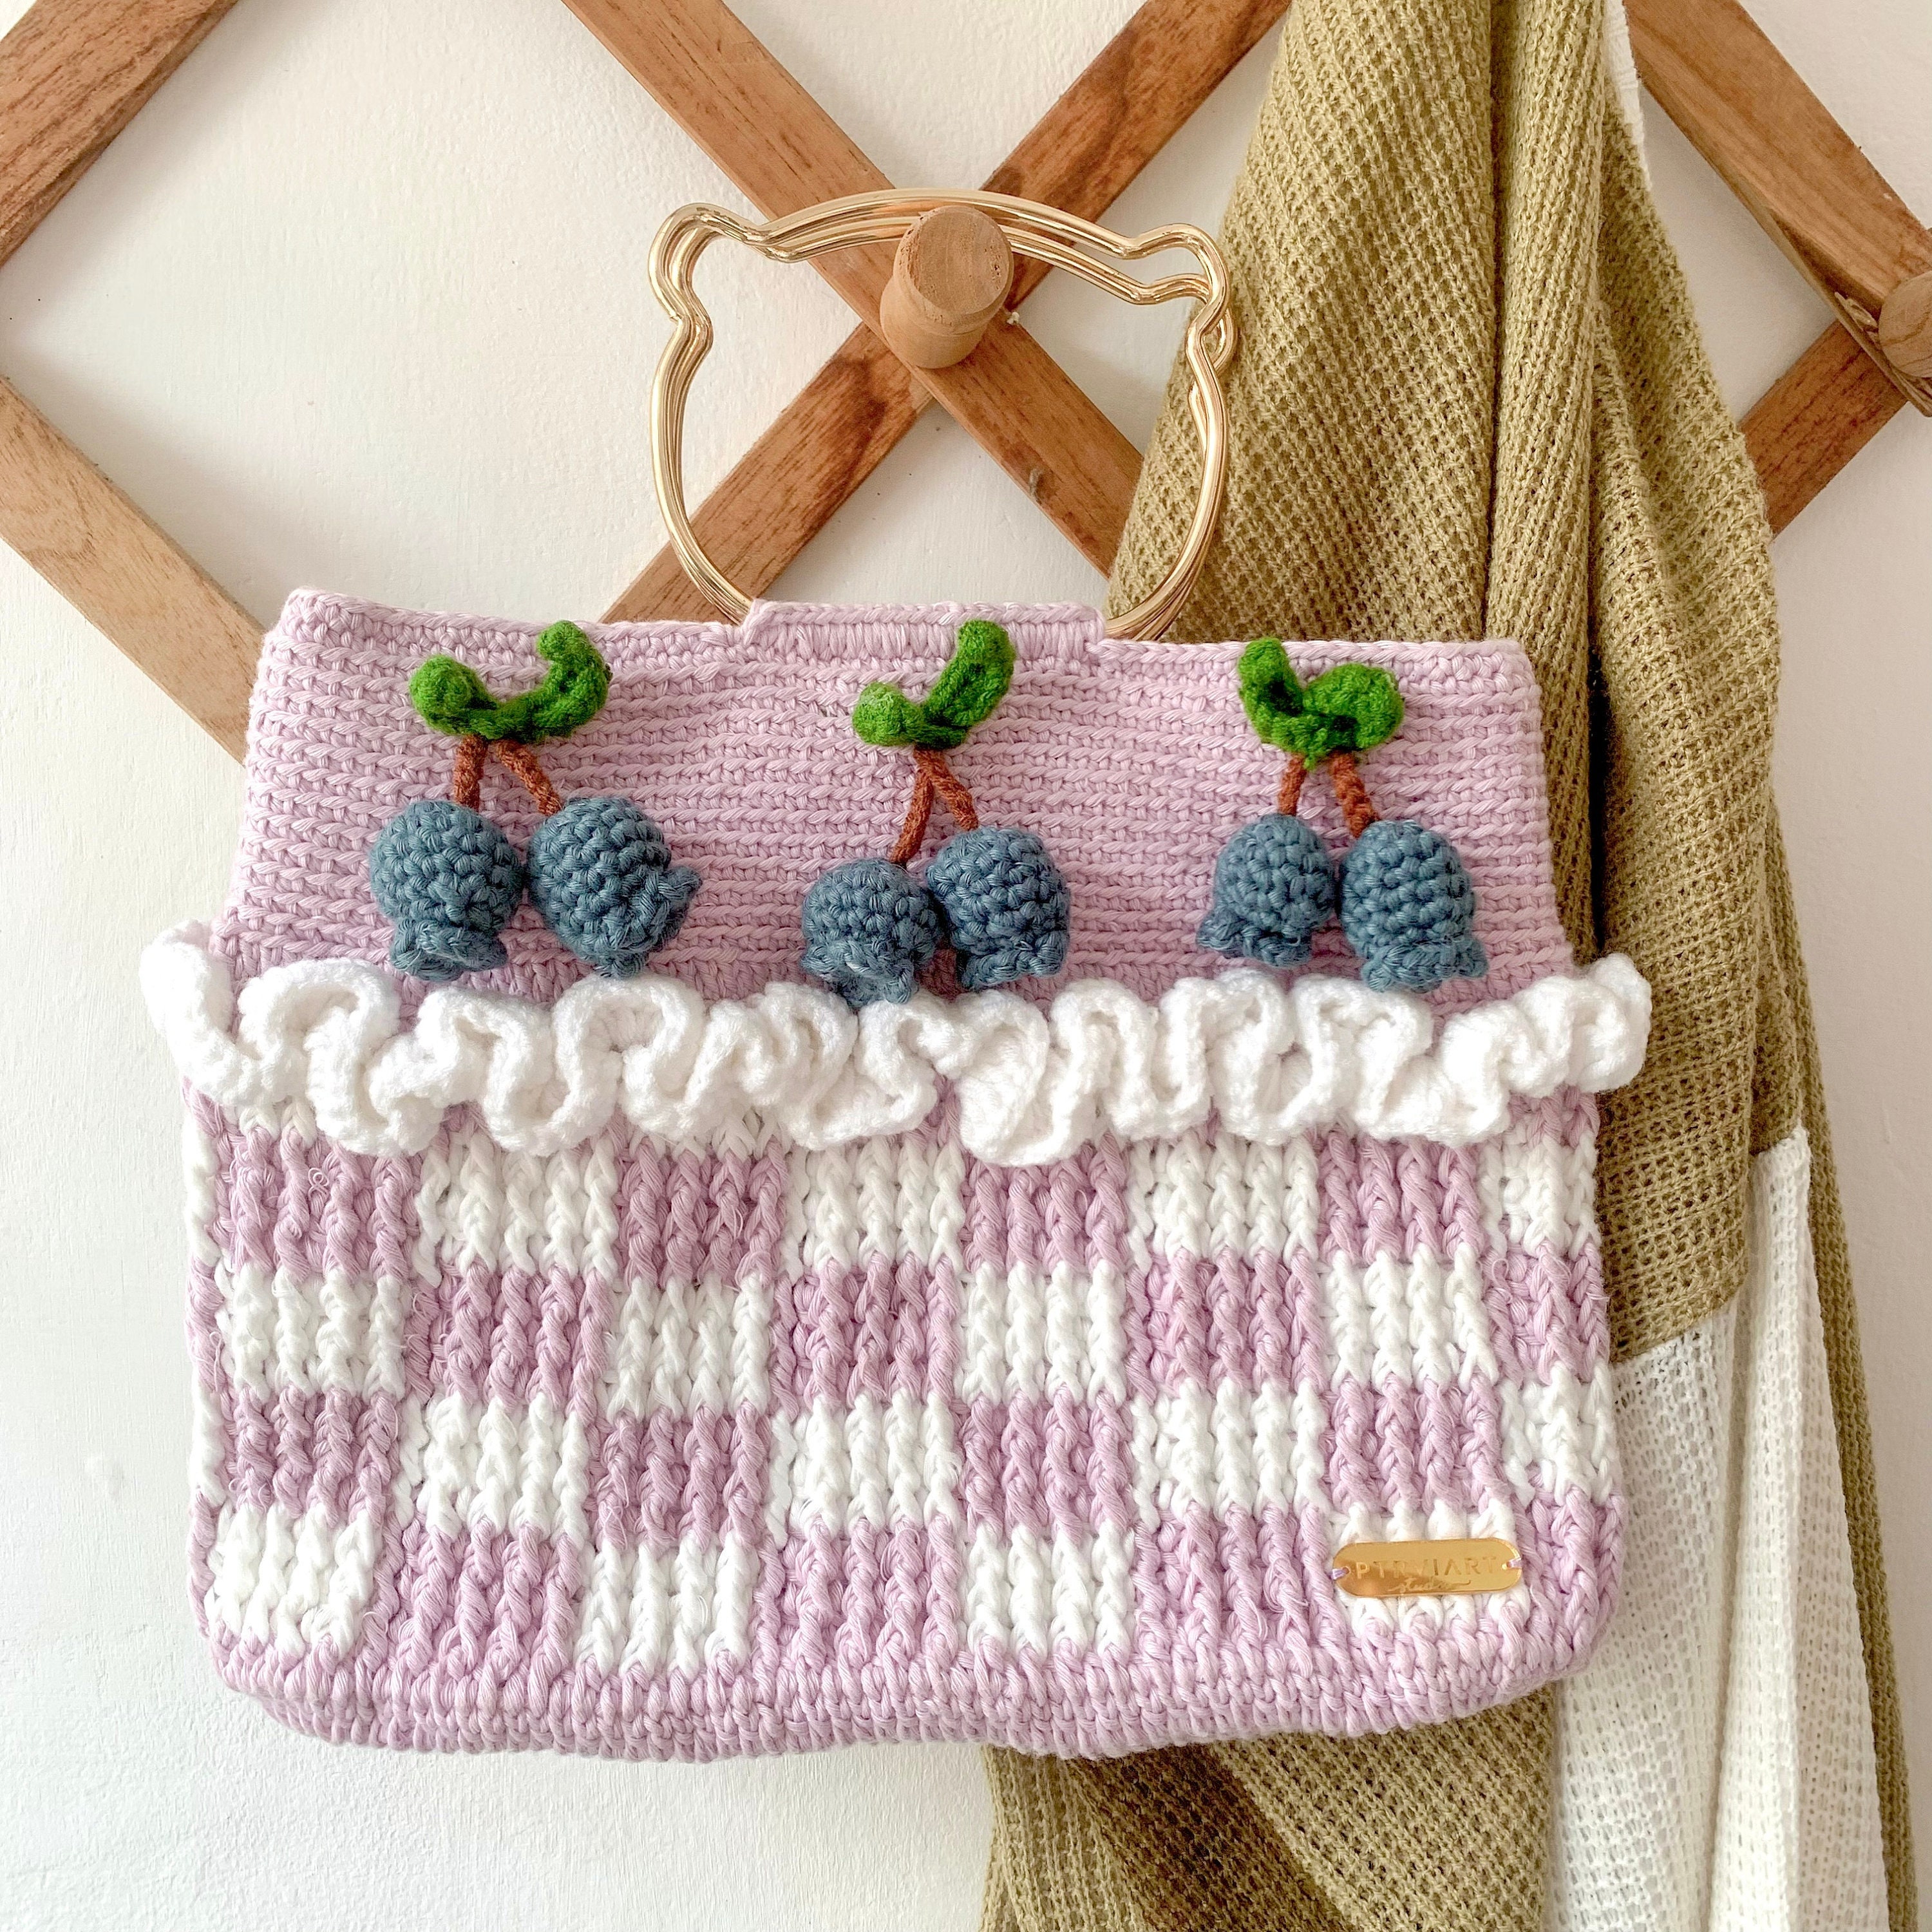 Brighton Woven Crochet Purse Crossbody Leather Flower Trim SO Cute!! | eBay